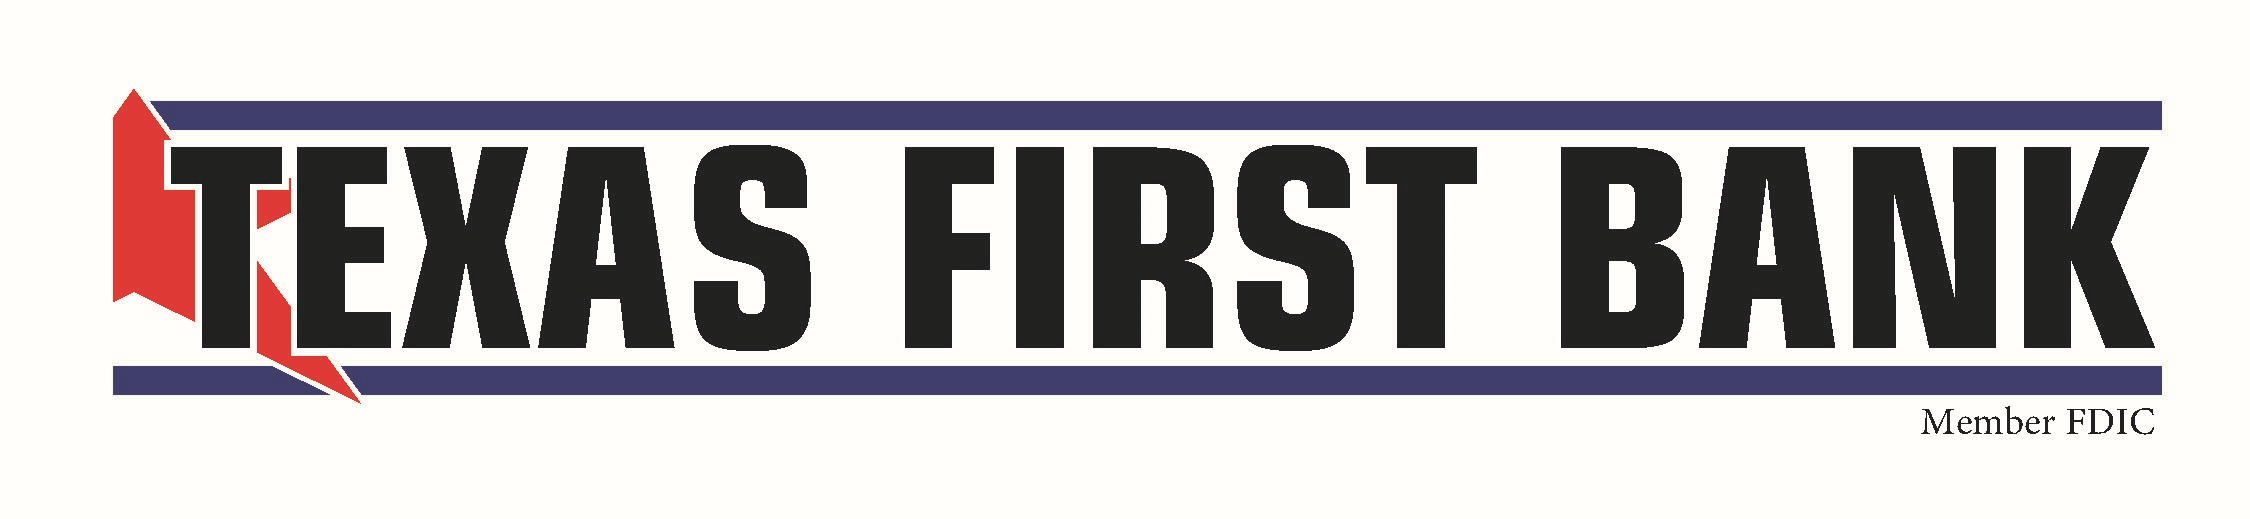 Texas First Bank logo